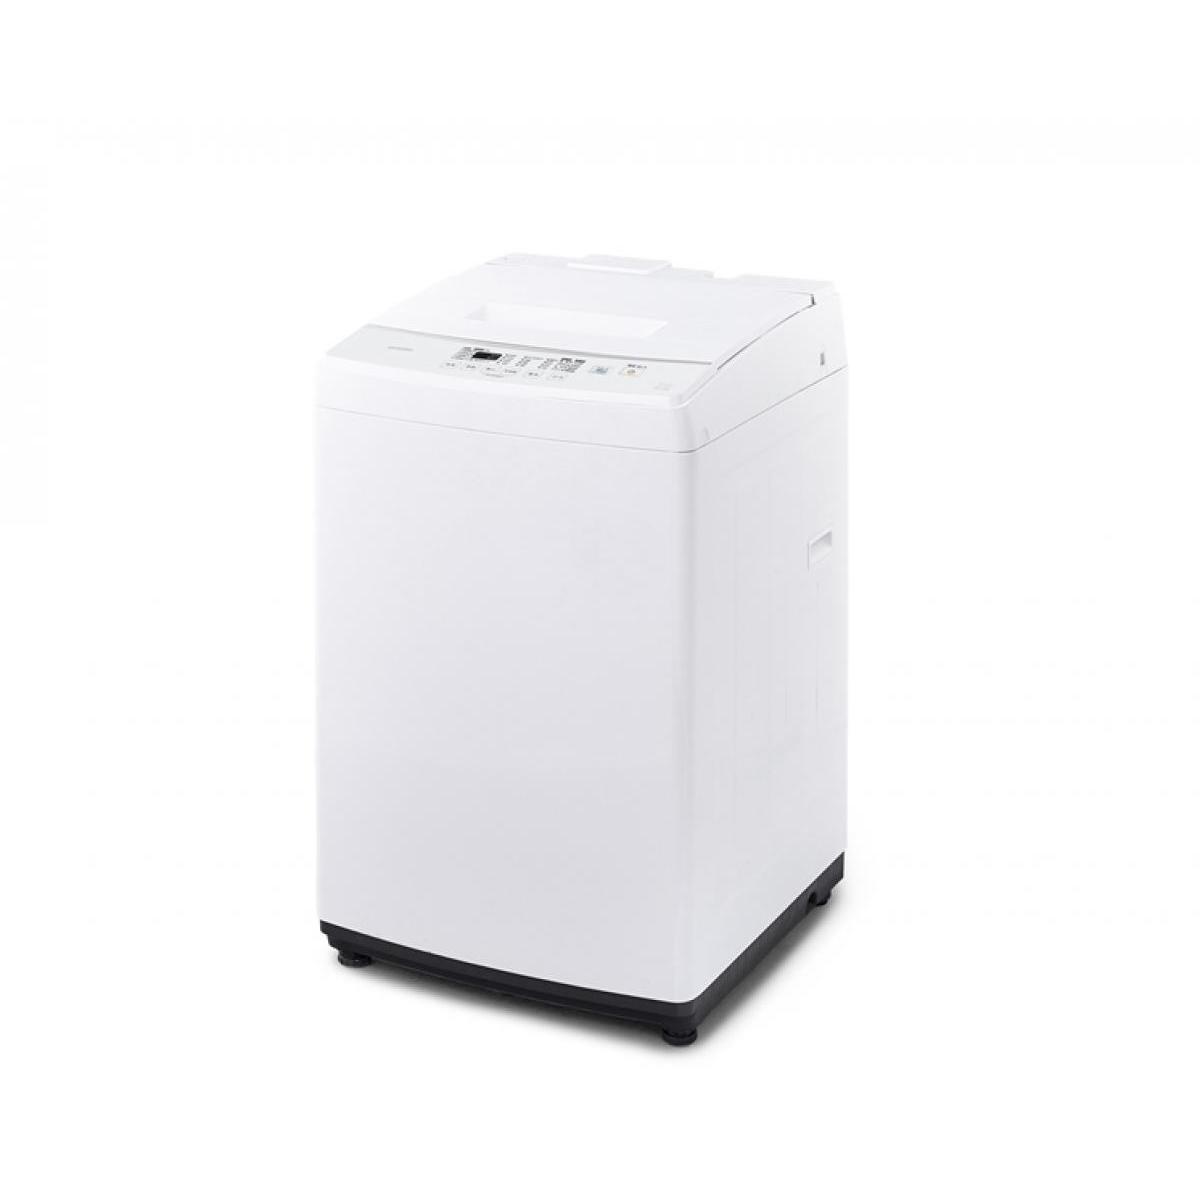 全自動洗濯機 7kg IAW-T705Eの商品画像